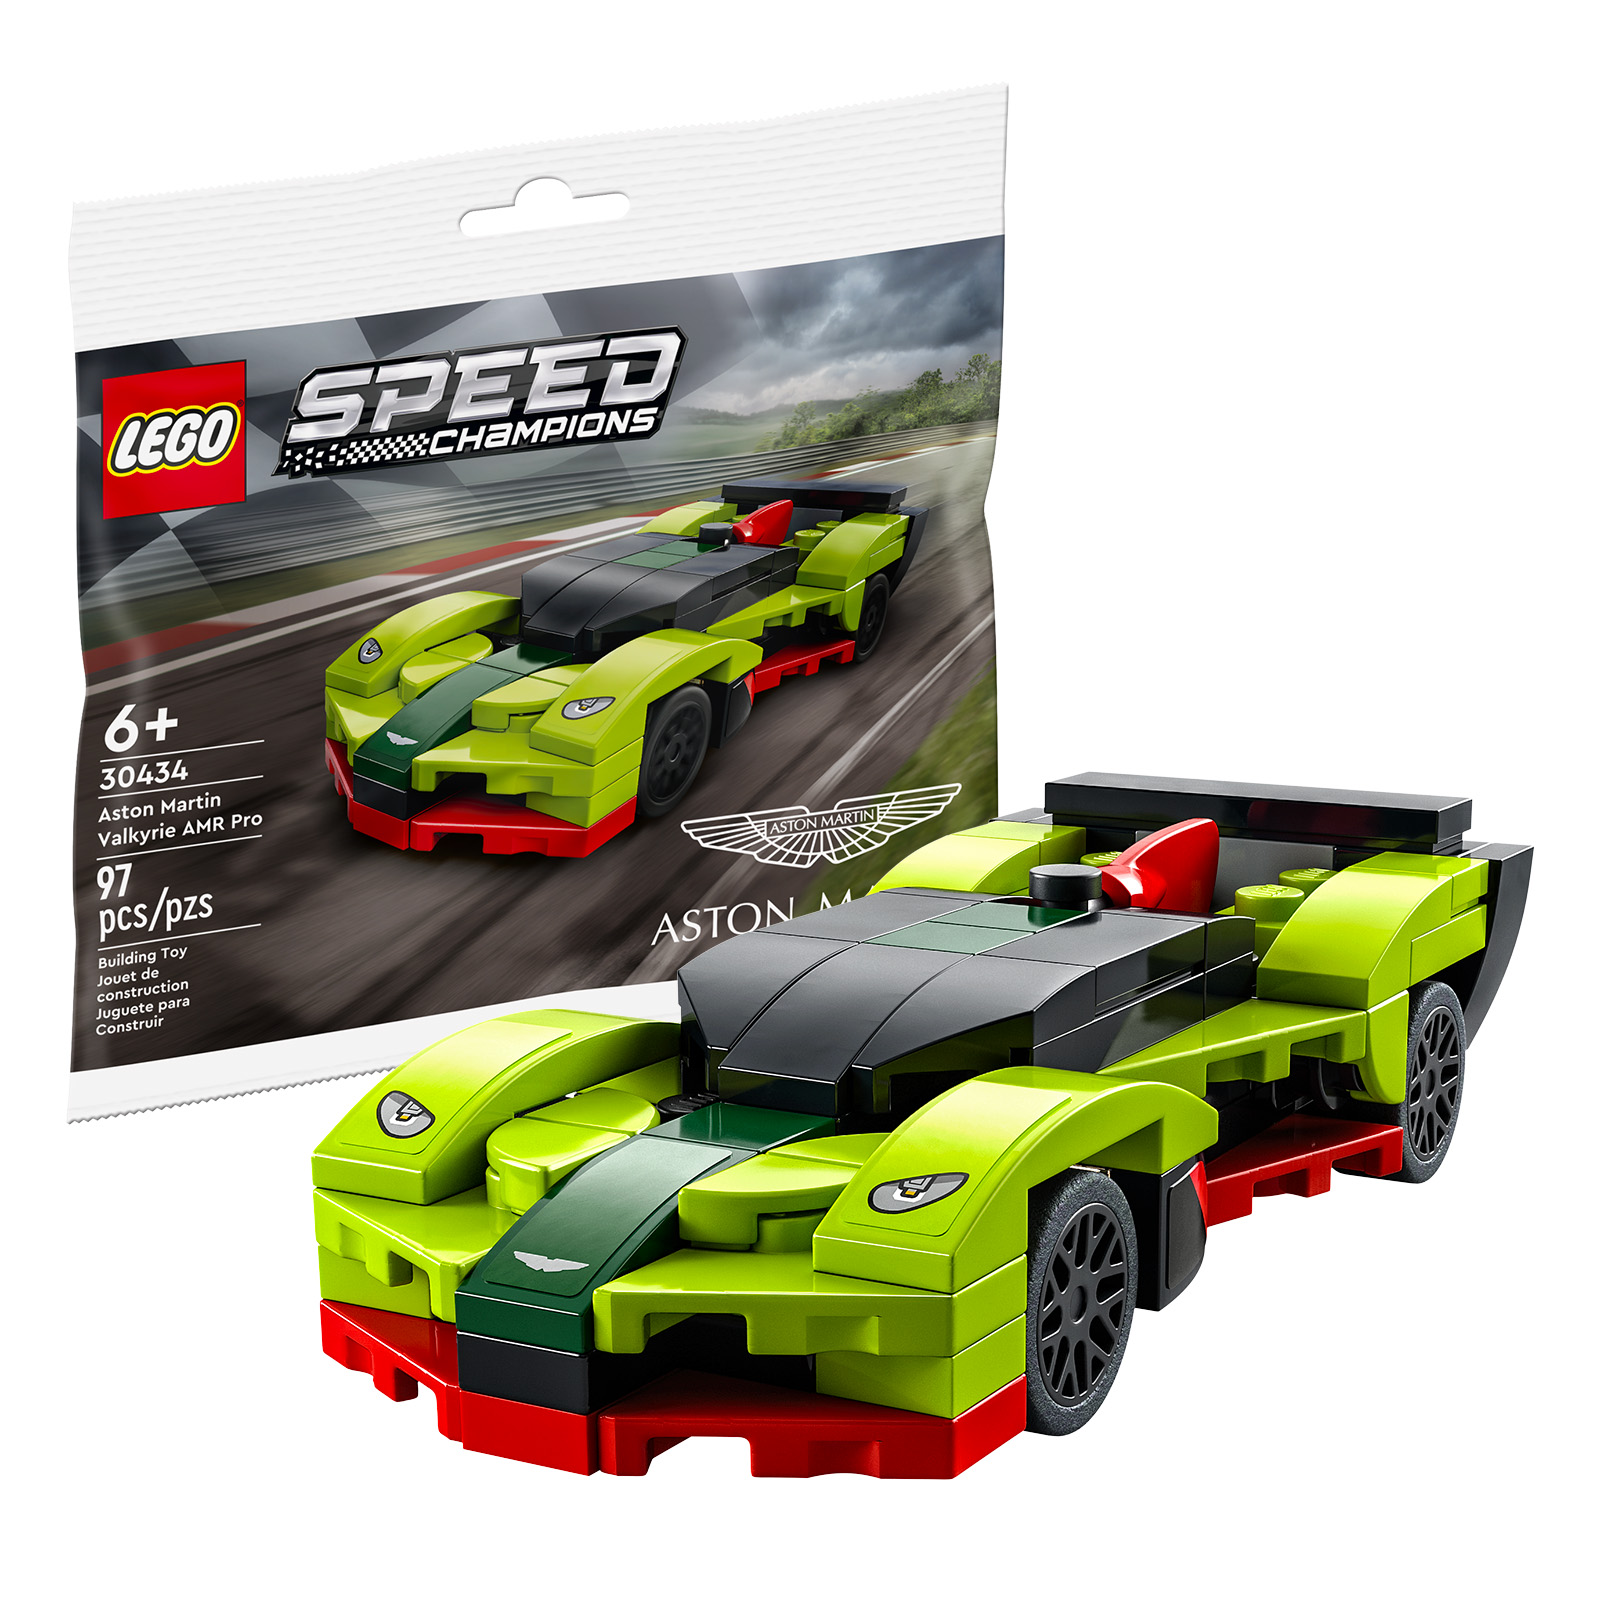 Í LEGO búðinni: LEGO Speed ​​​​Champions 30434 Aston Martin Valkyrie AMR Pro fjölpoki er ókeypis ef keypt er yfir 40 €